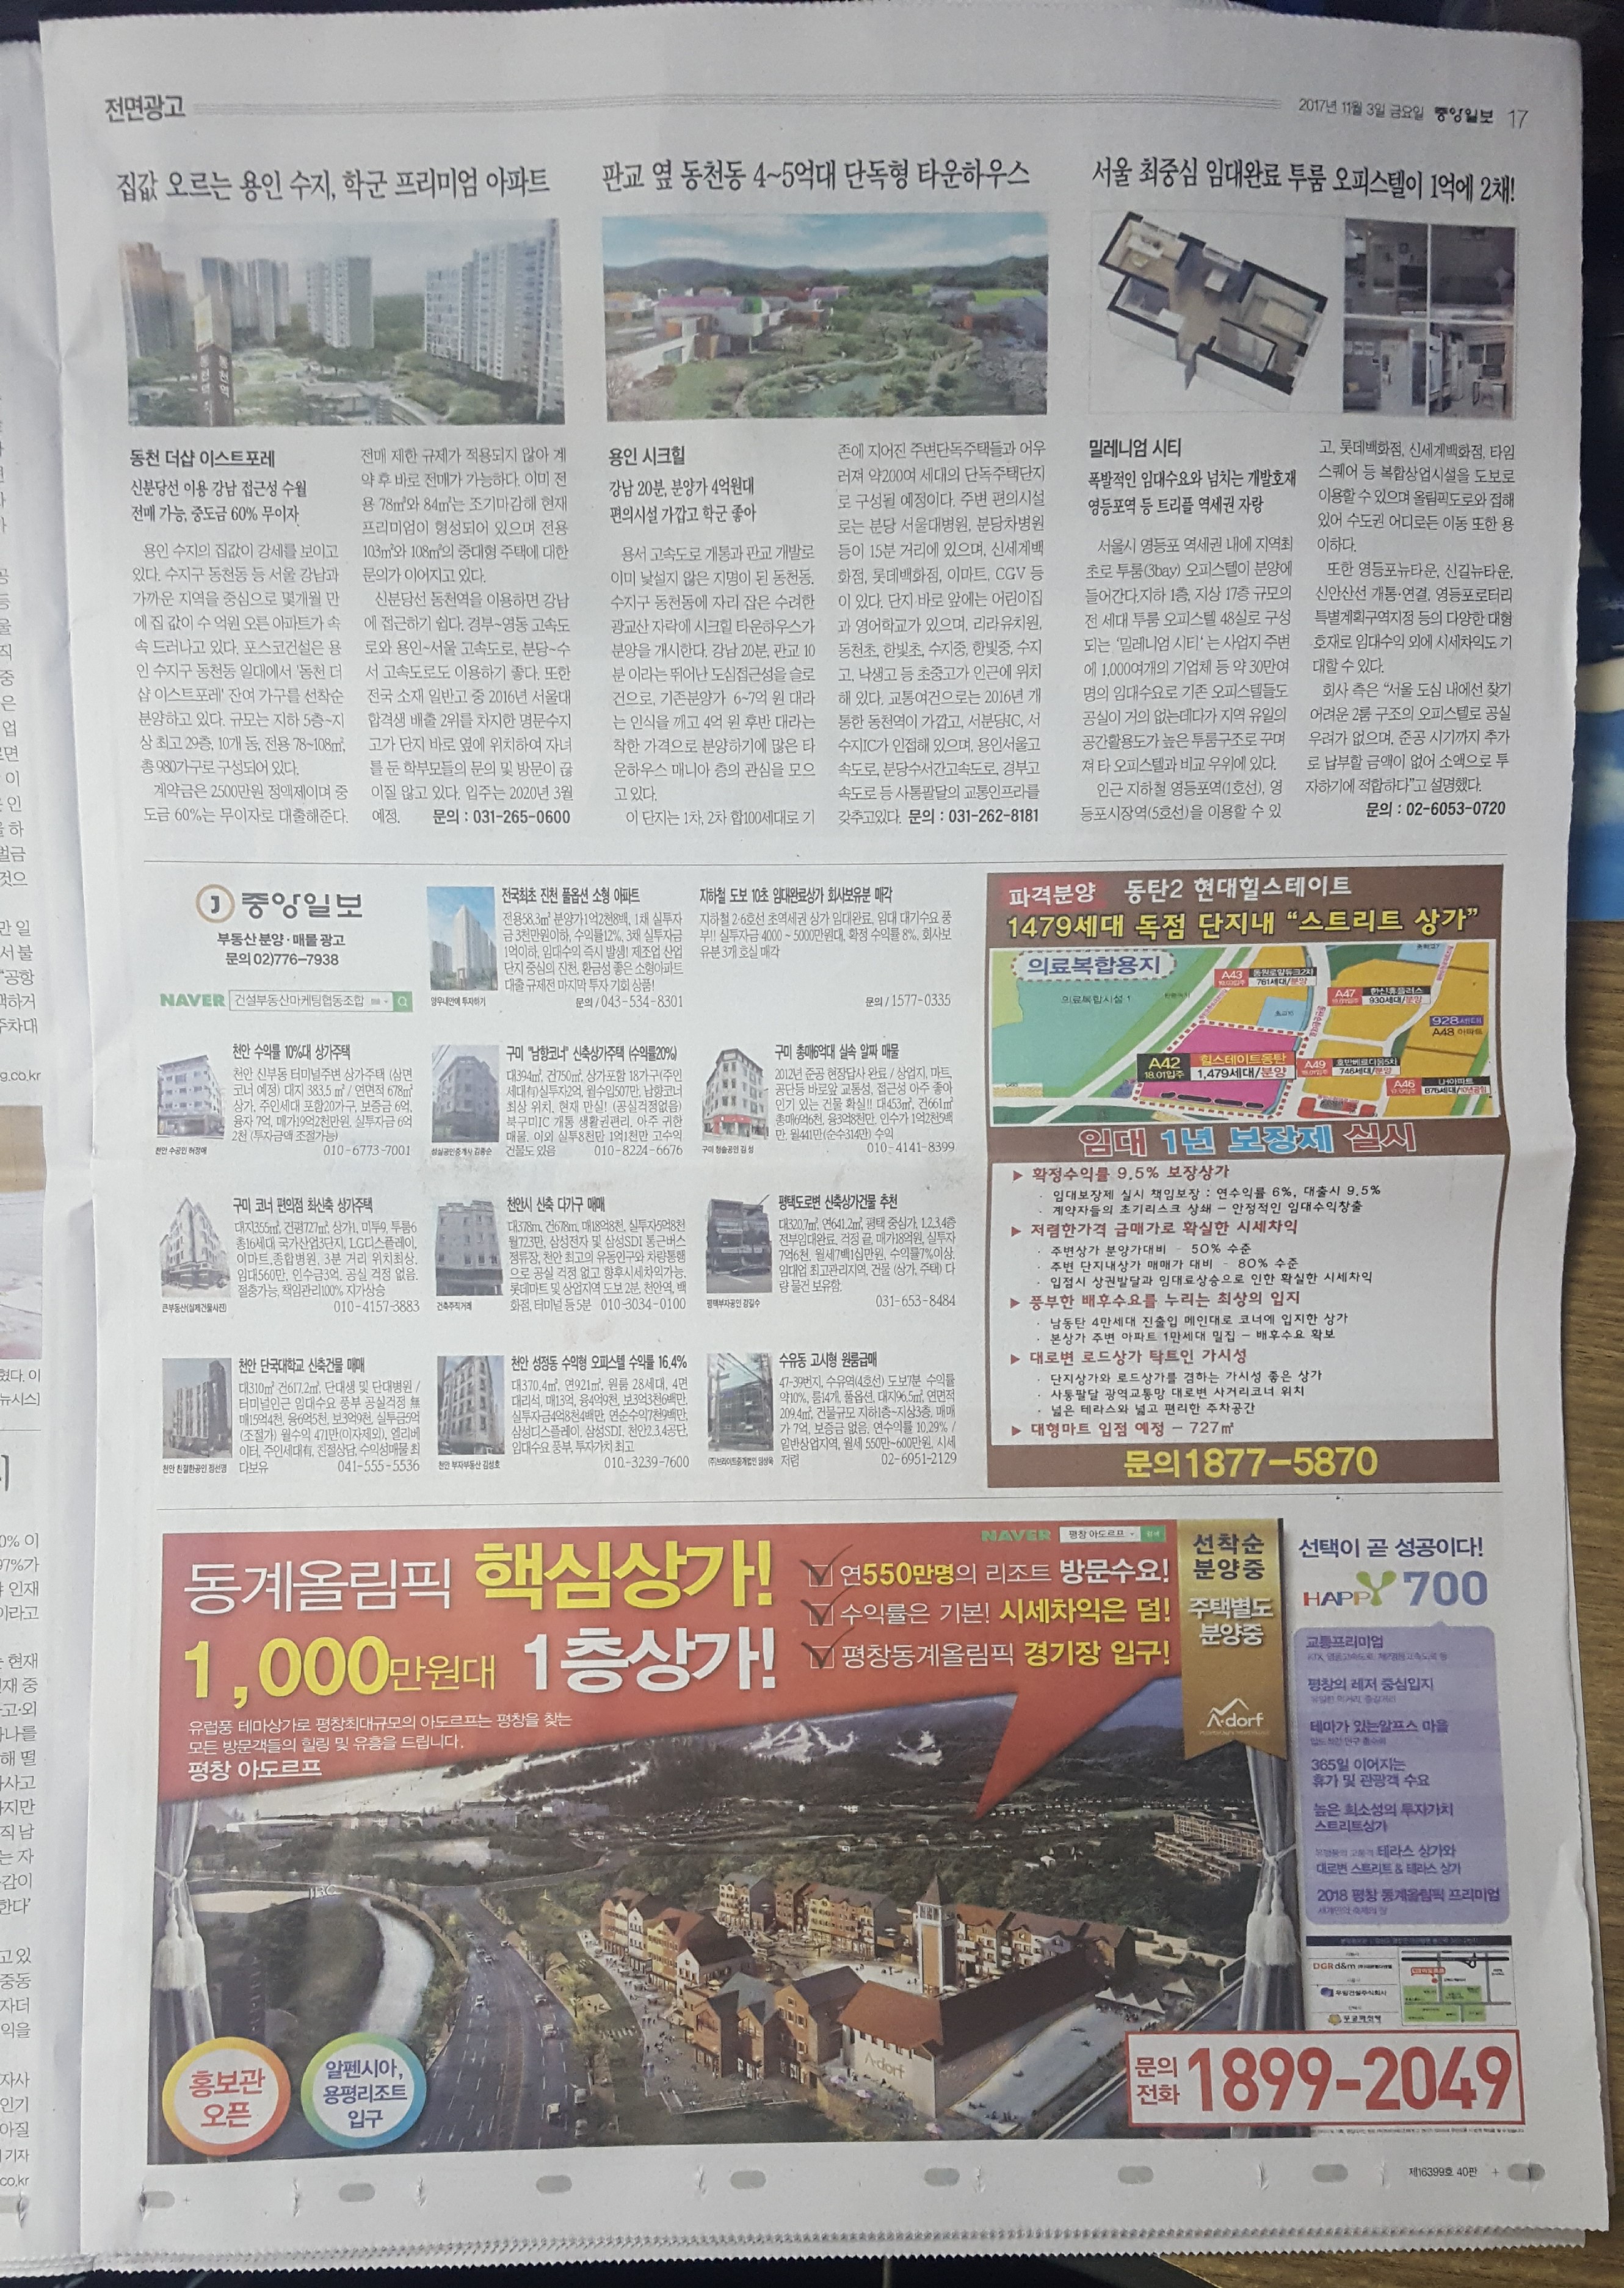 11월 03일 중앙일보 17 기사식매물광고..jpg